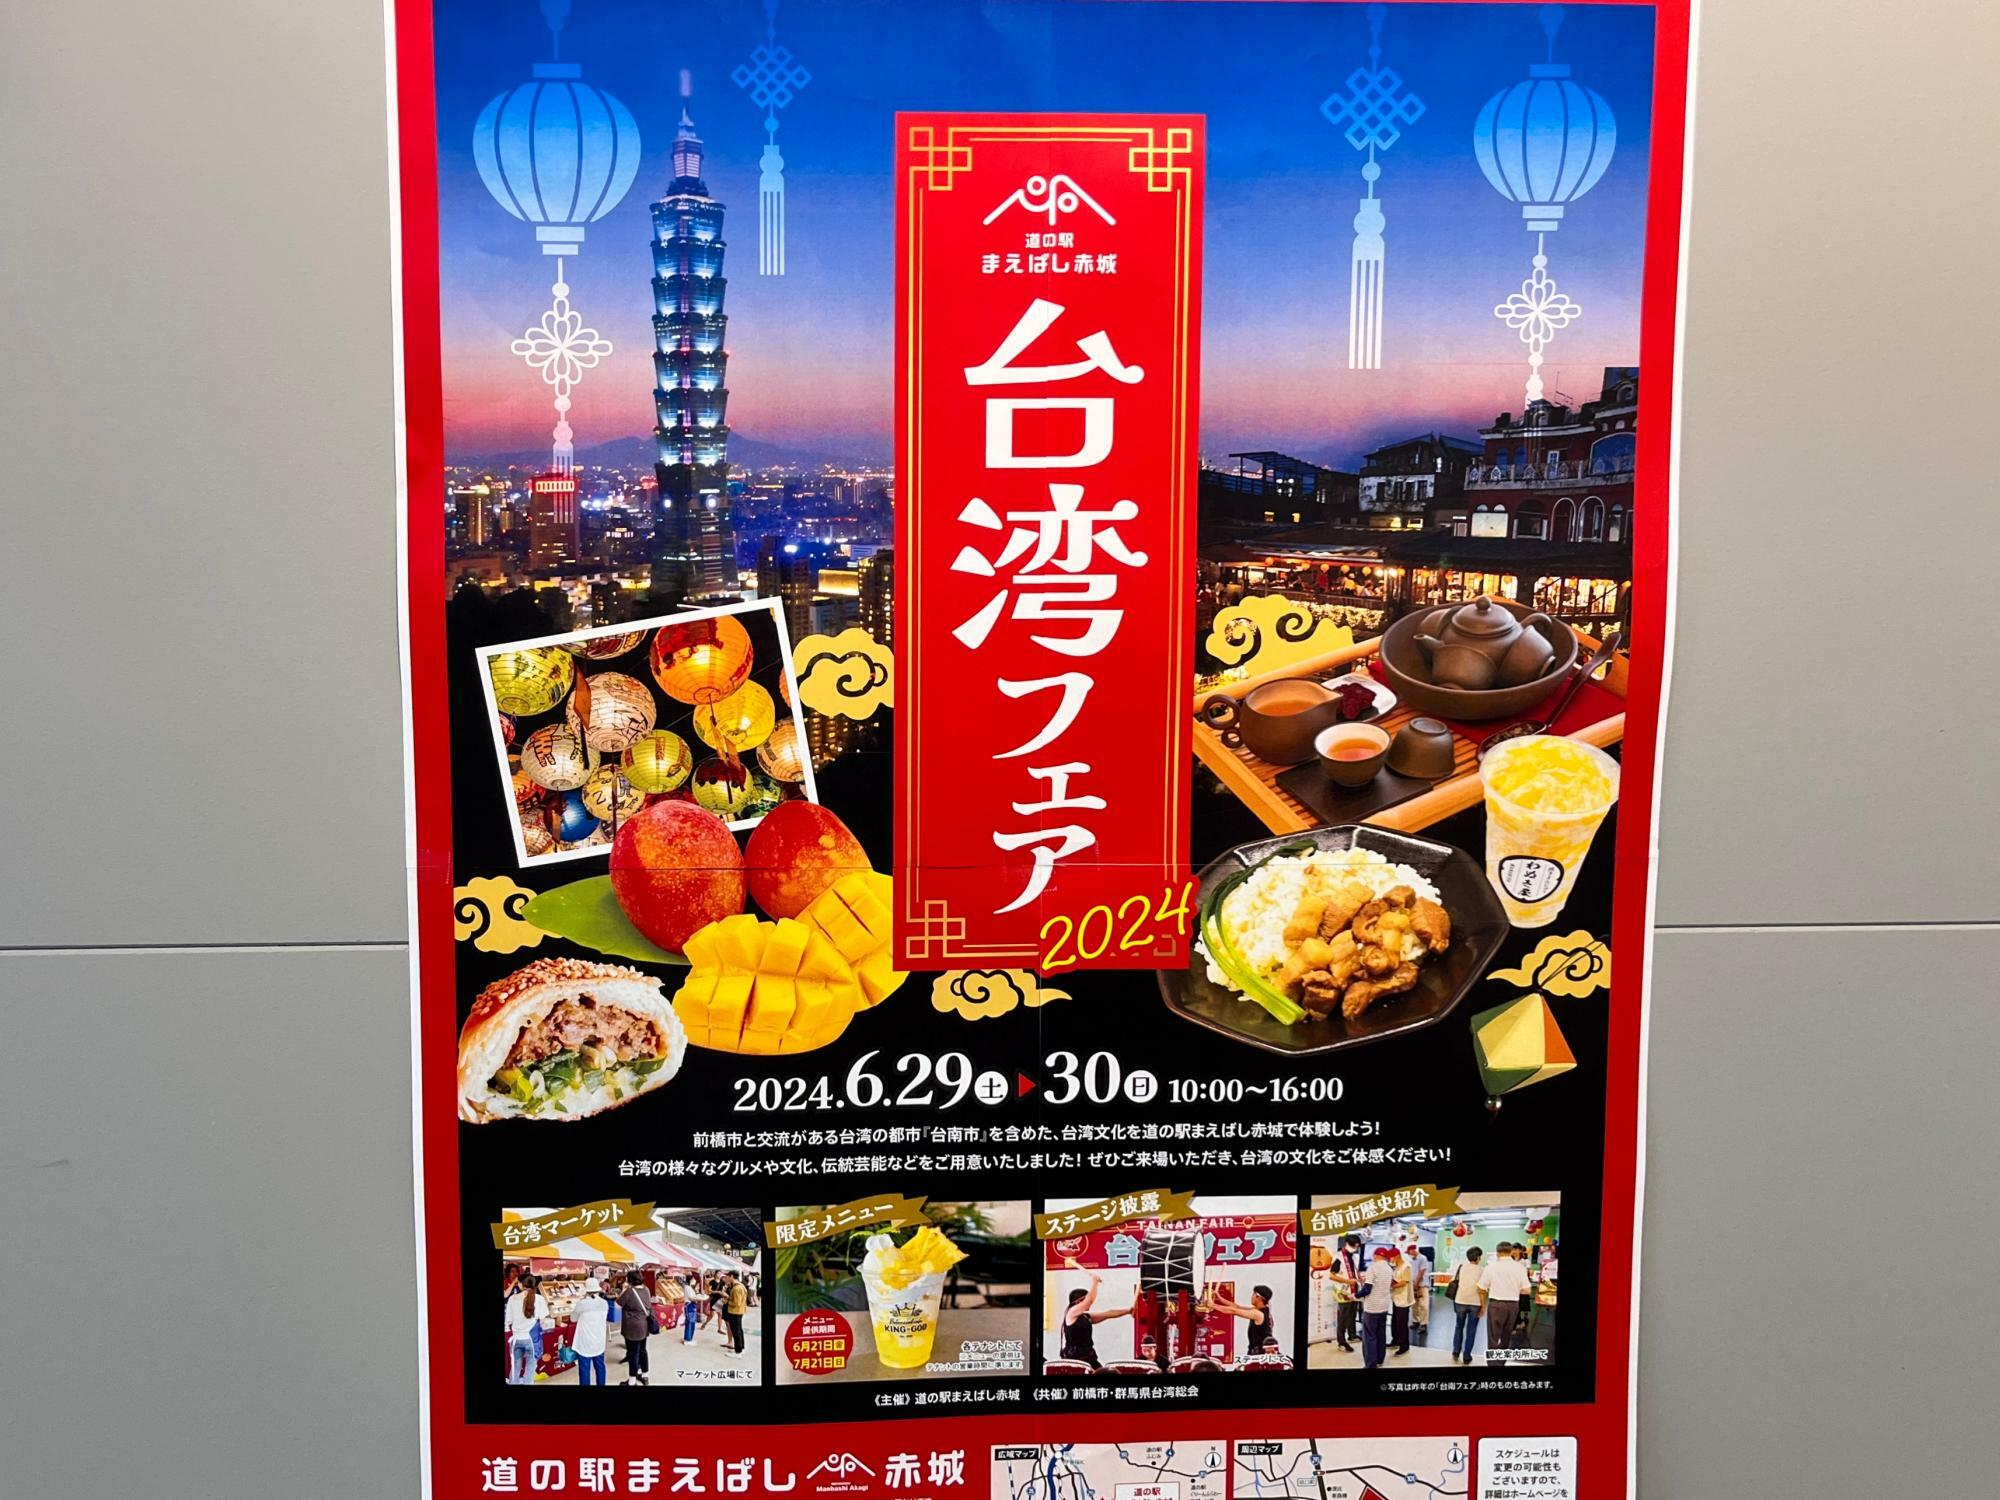 「台湾フェア2024」開催告知のポスター